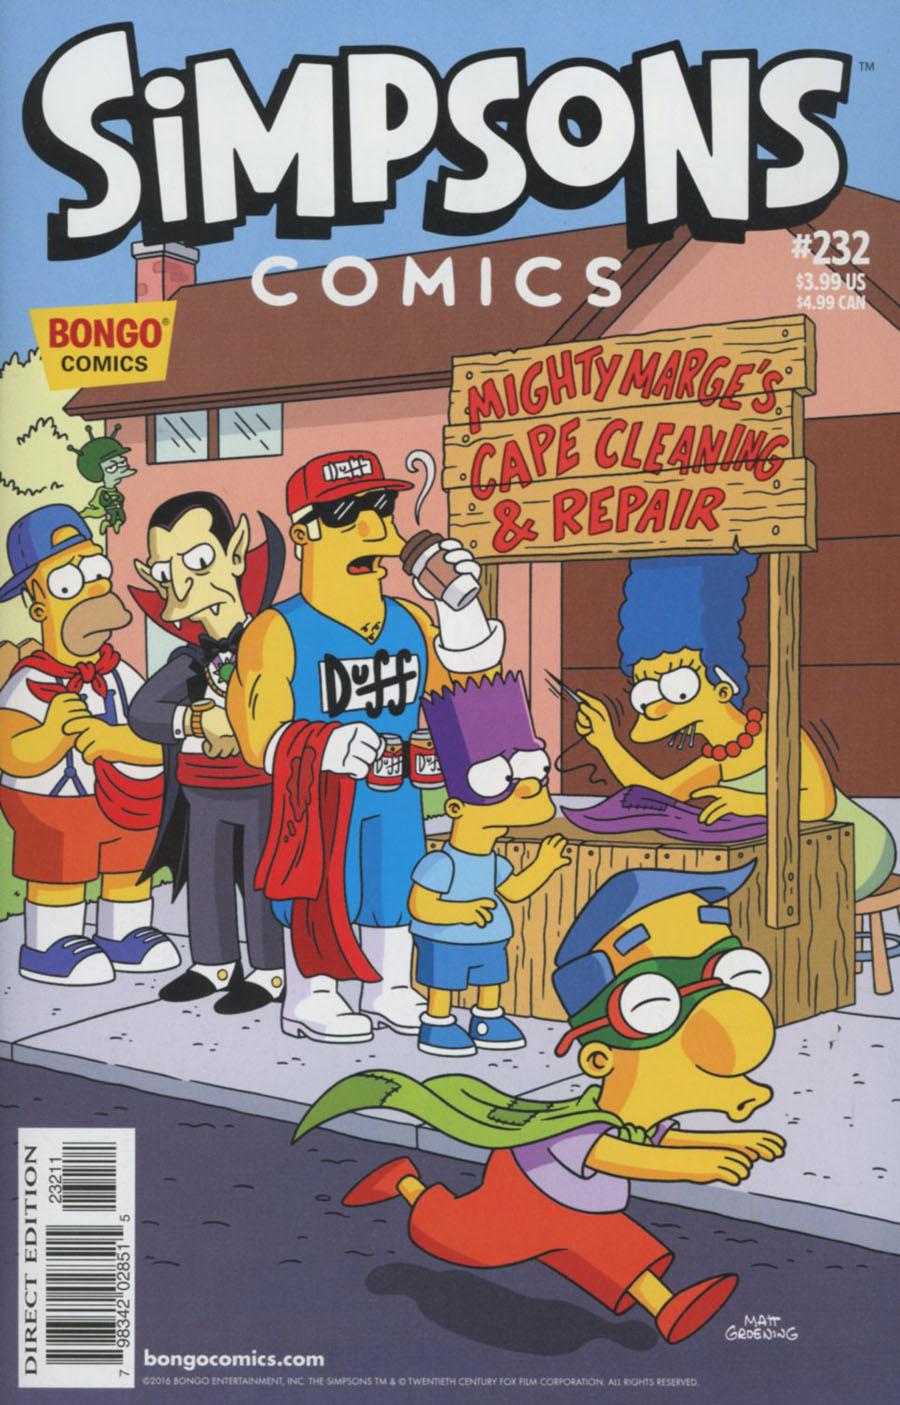 Simpsons Comics Vol. 1 #232